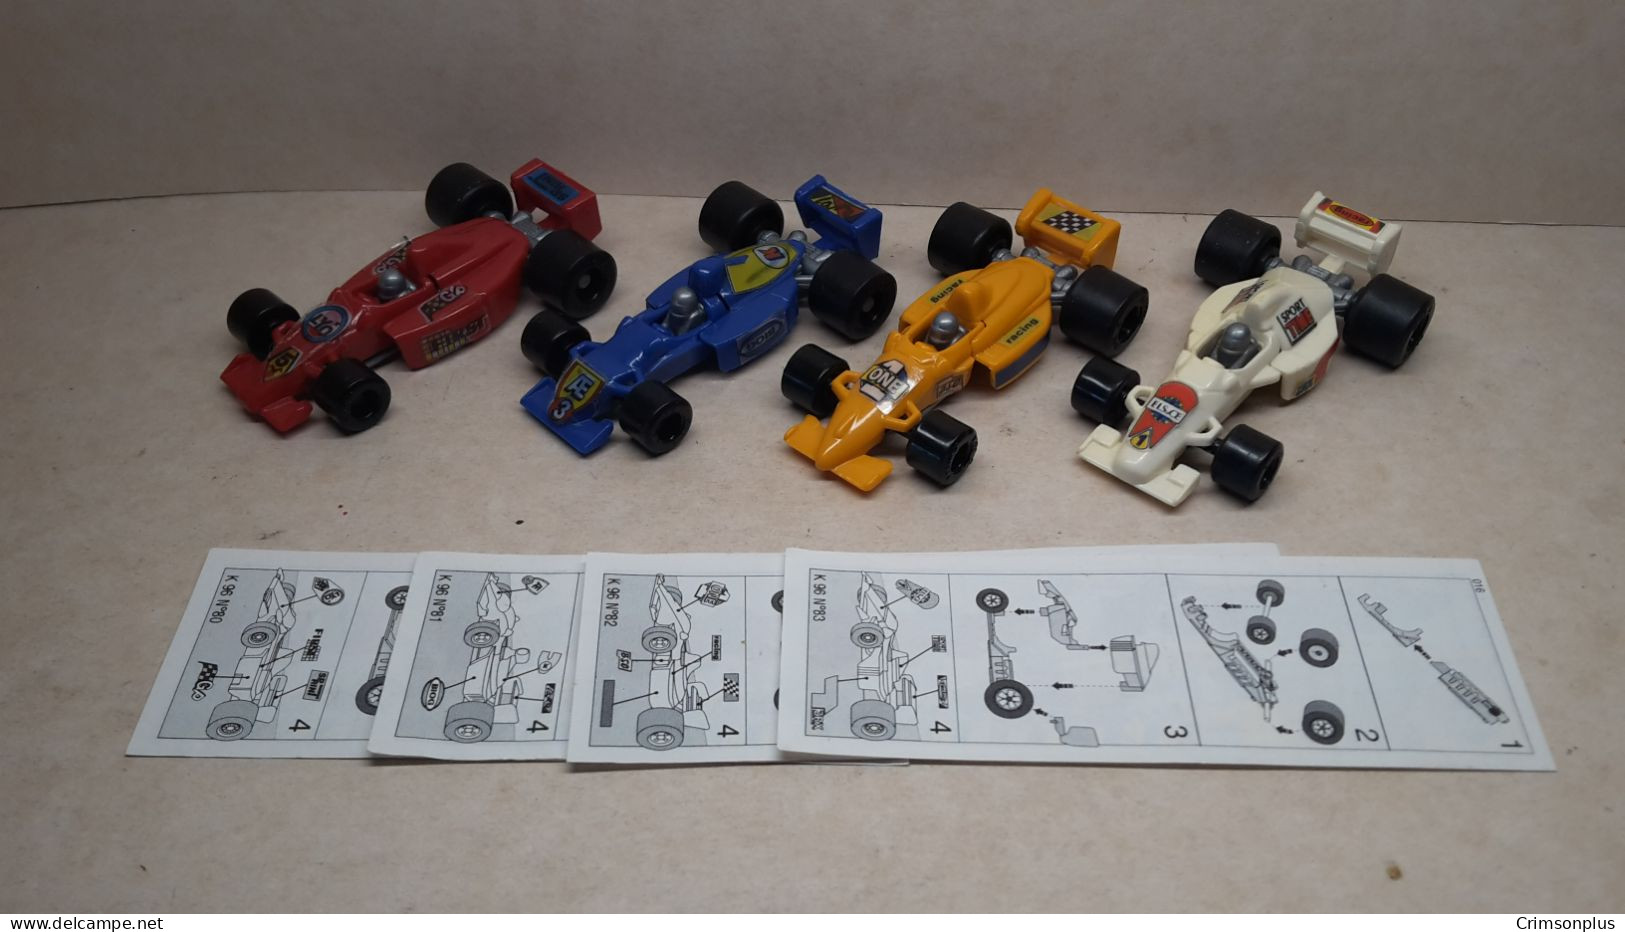 1996 Ferrero - Kinder Surprise - K96 80, 81, 82 & 83 - Race Cars - Complete Set + 4 BPZ's - Monoblocs